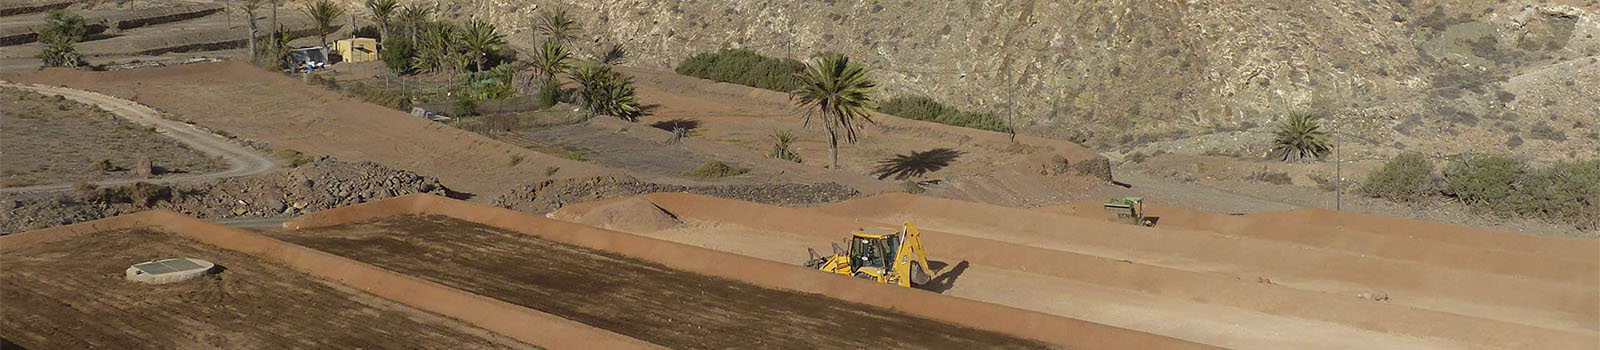 Die Gavias auf Fuerteventura – Bewässerungs-Technik der Berber in Nordafrika.